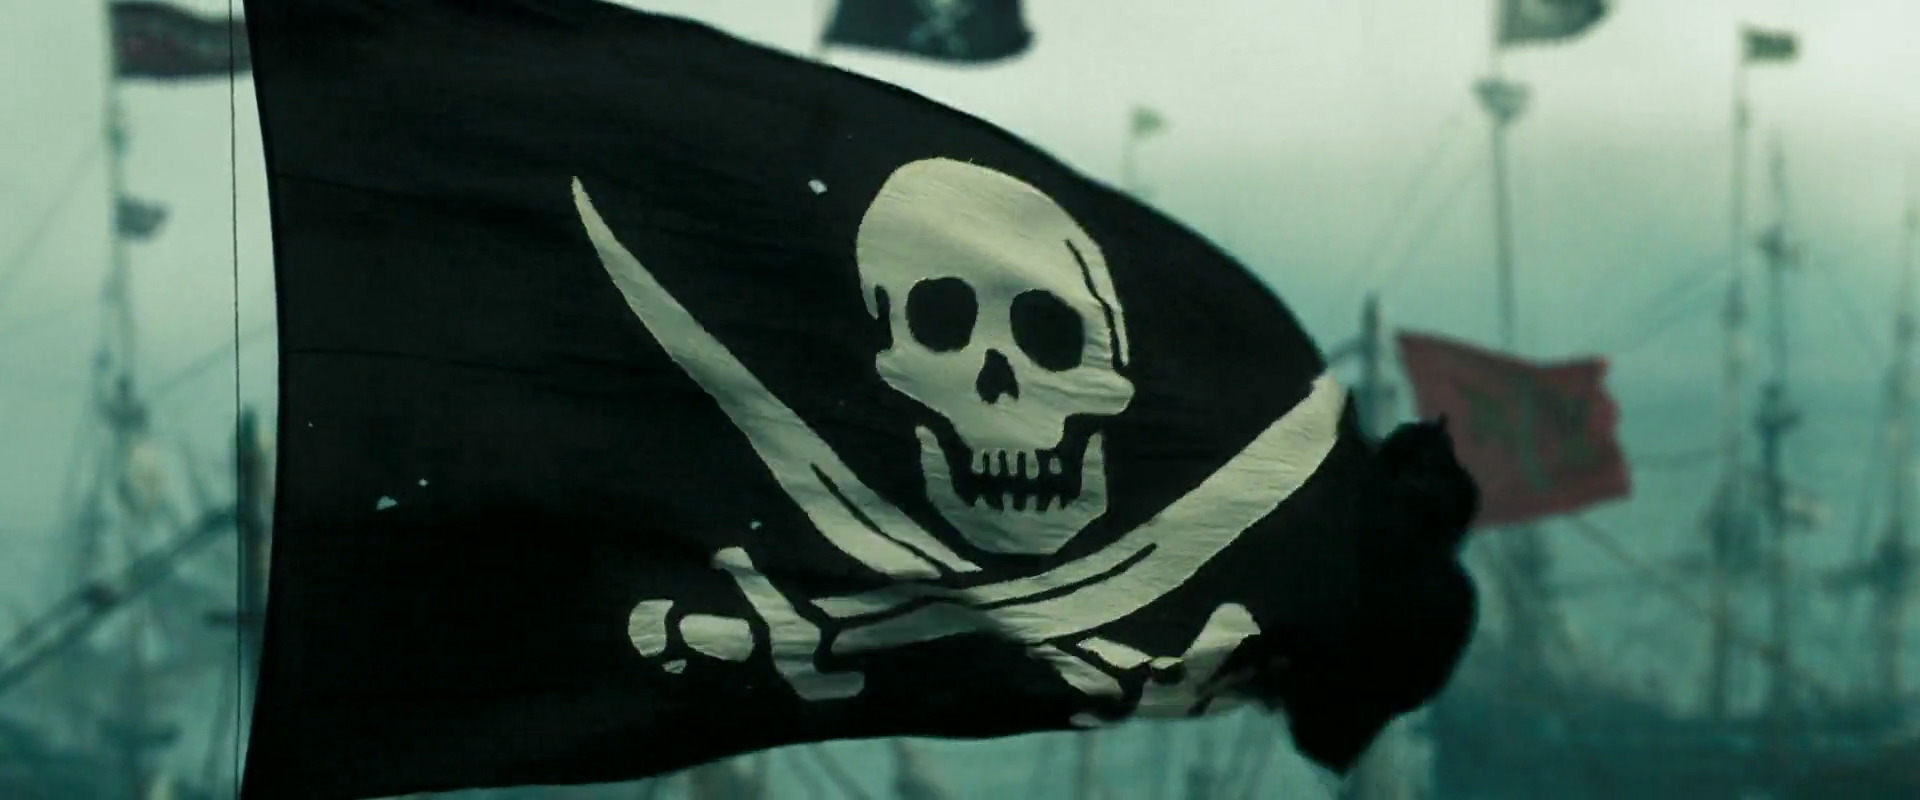 black pearl ship flag